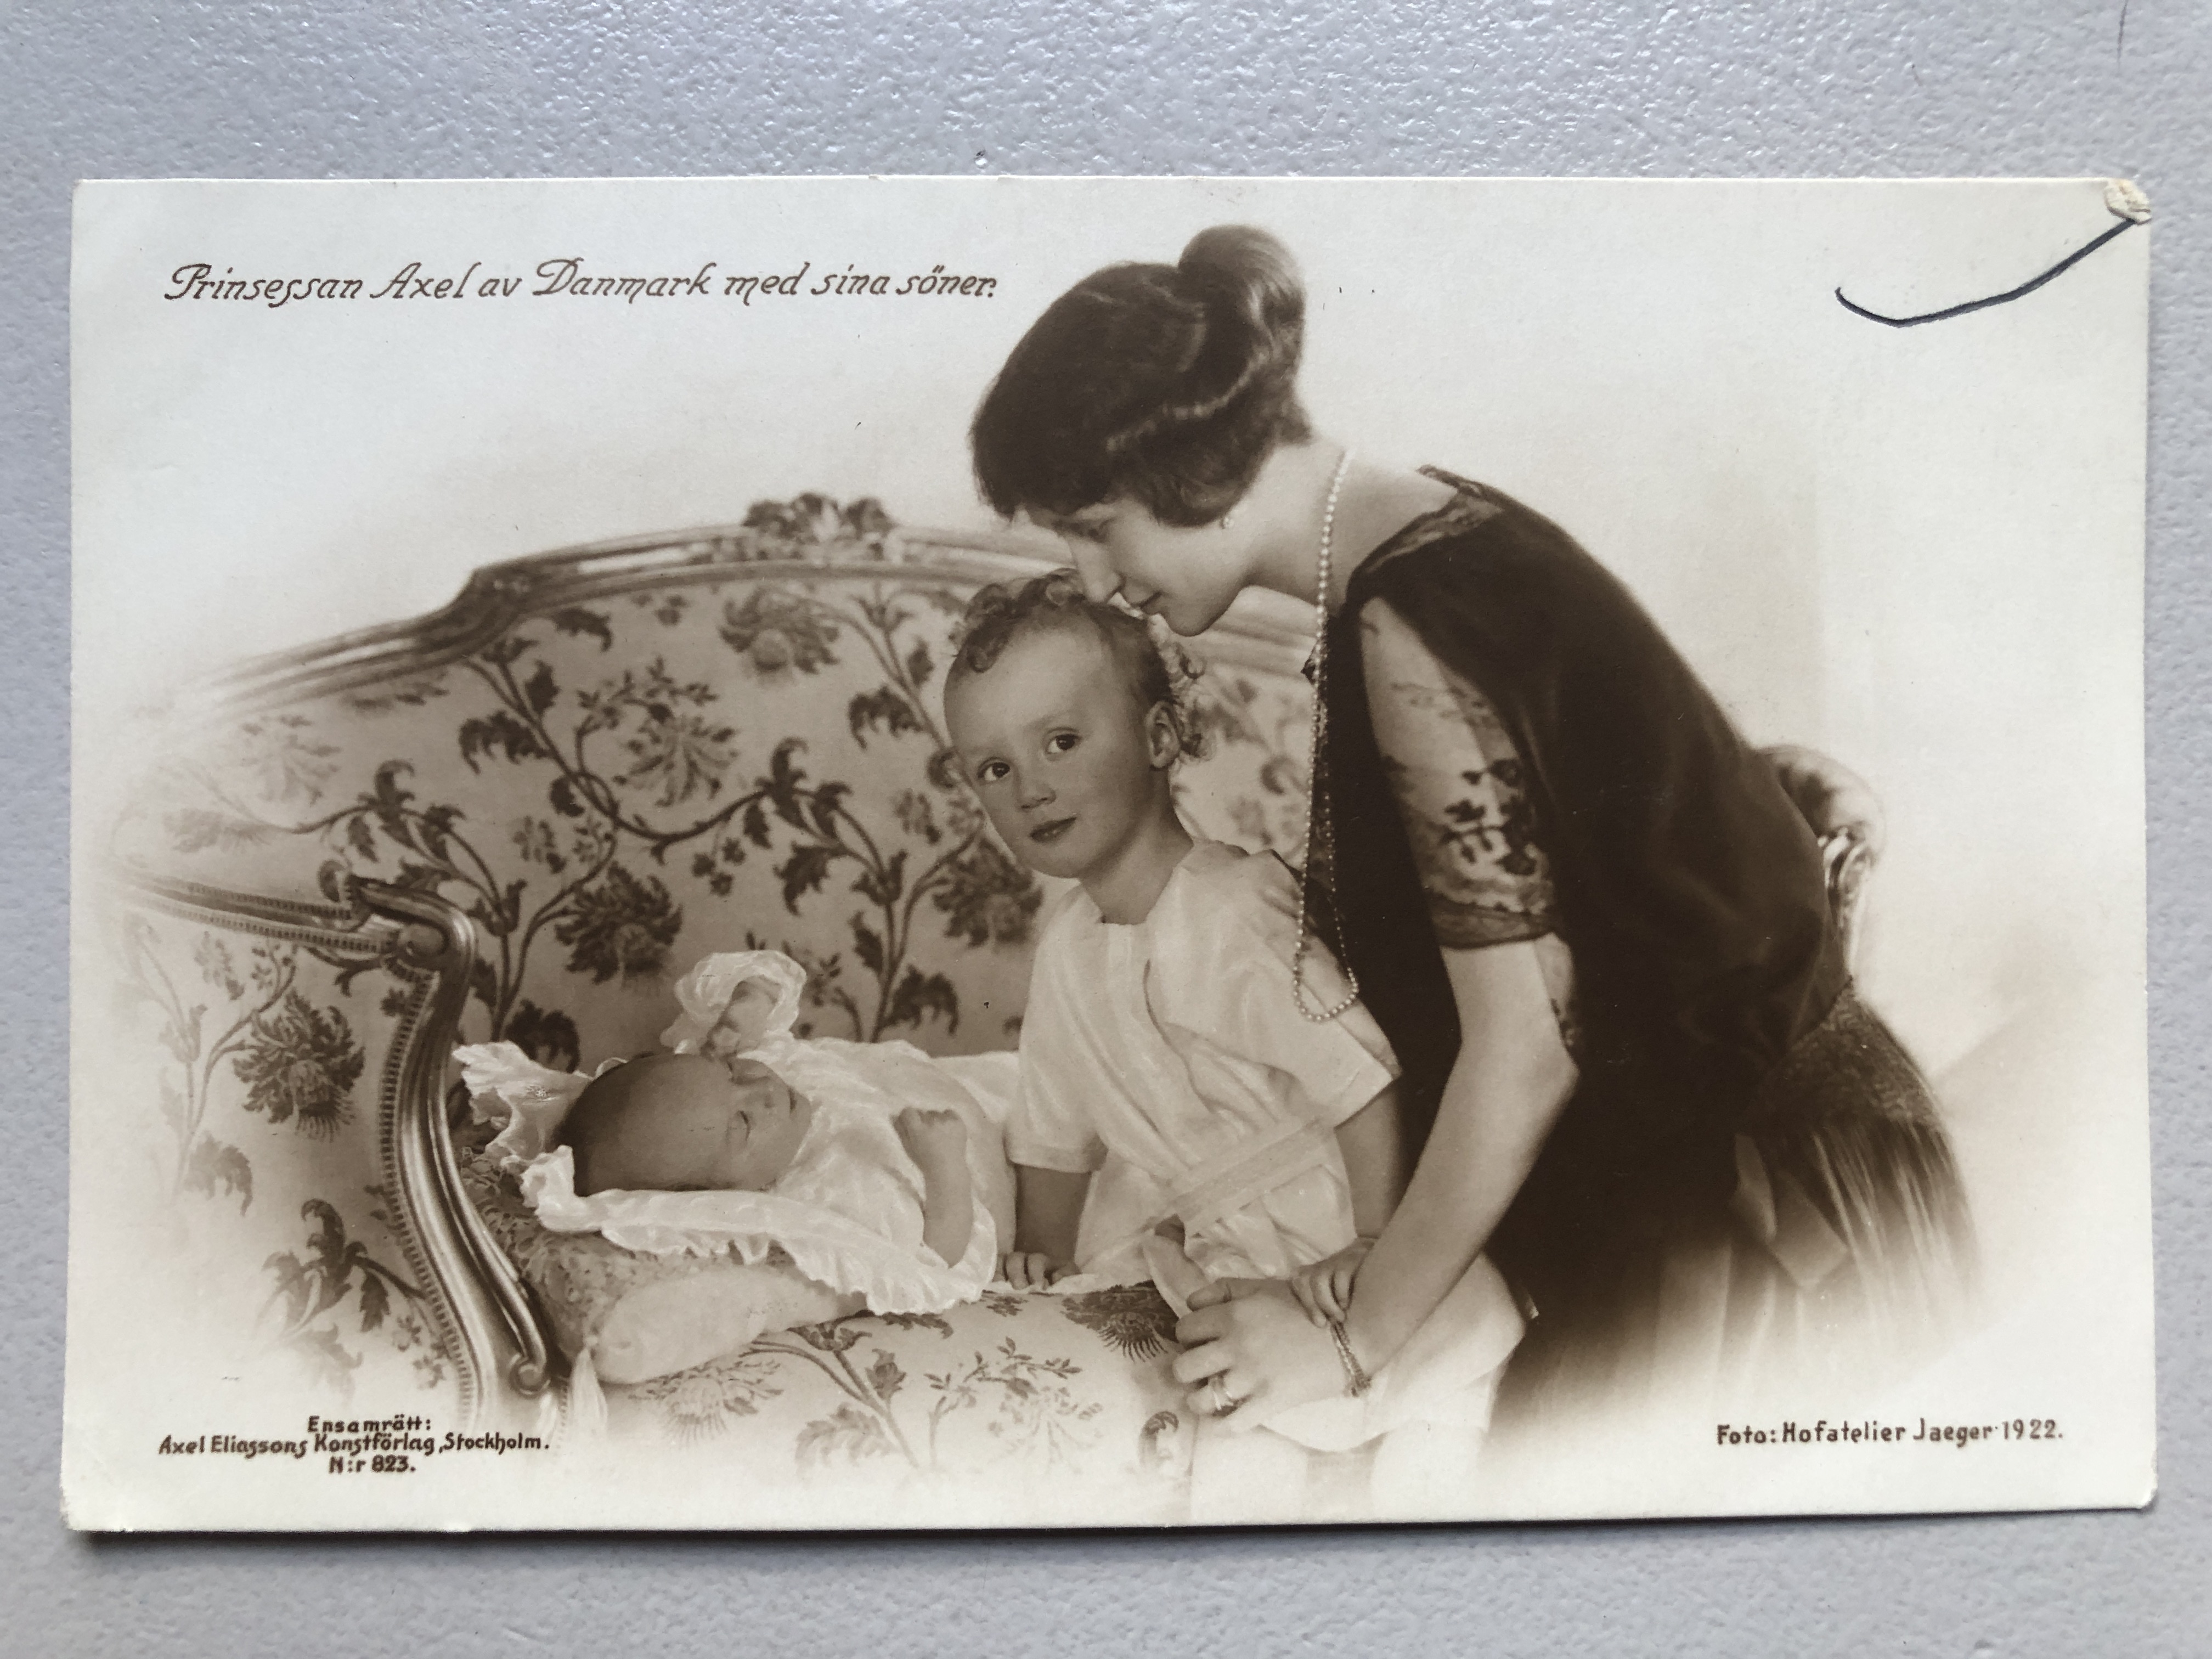 Prinsesse Axel av Danmark med sine to sønner, nr 823, foto: Hofatelier Jaeger 1922, Axel Eliassons Konstforlag